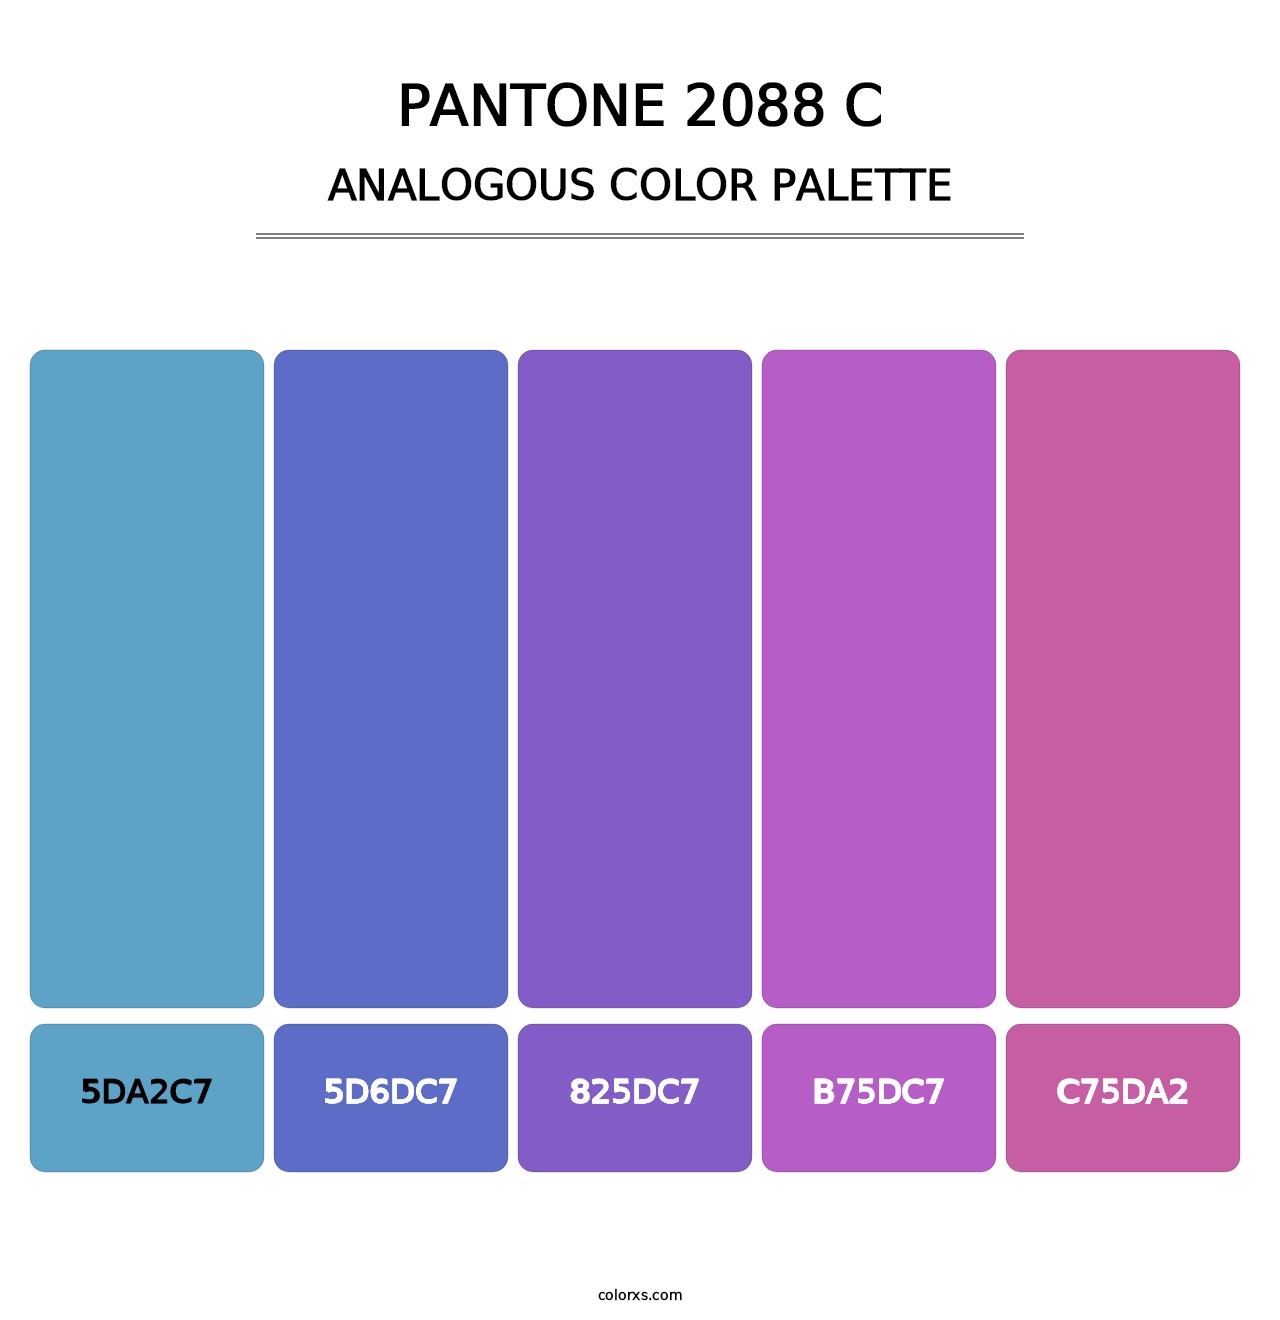 PANTONE 2088 C - Analogous Color Palette